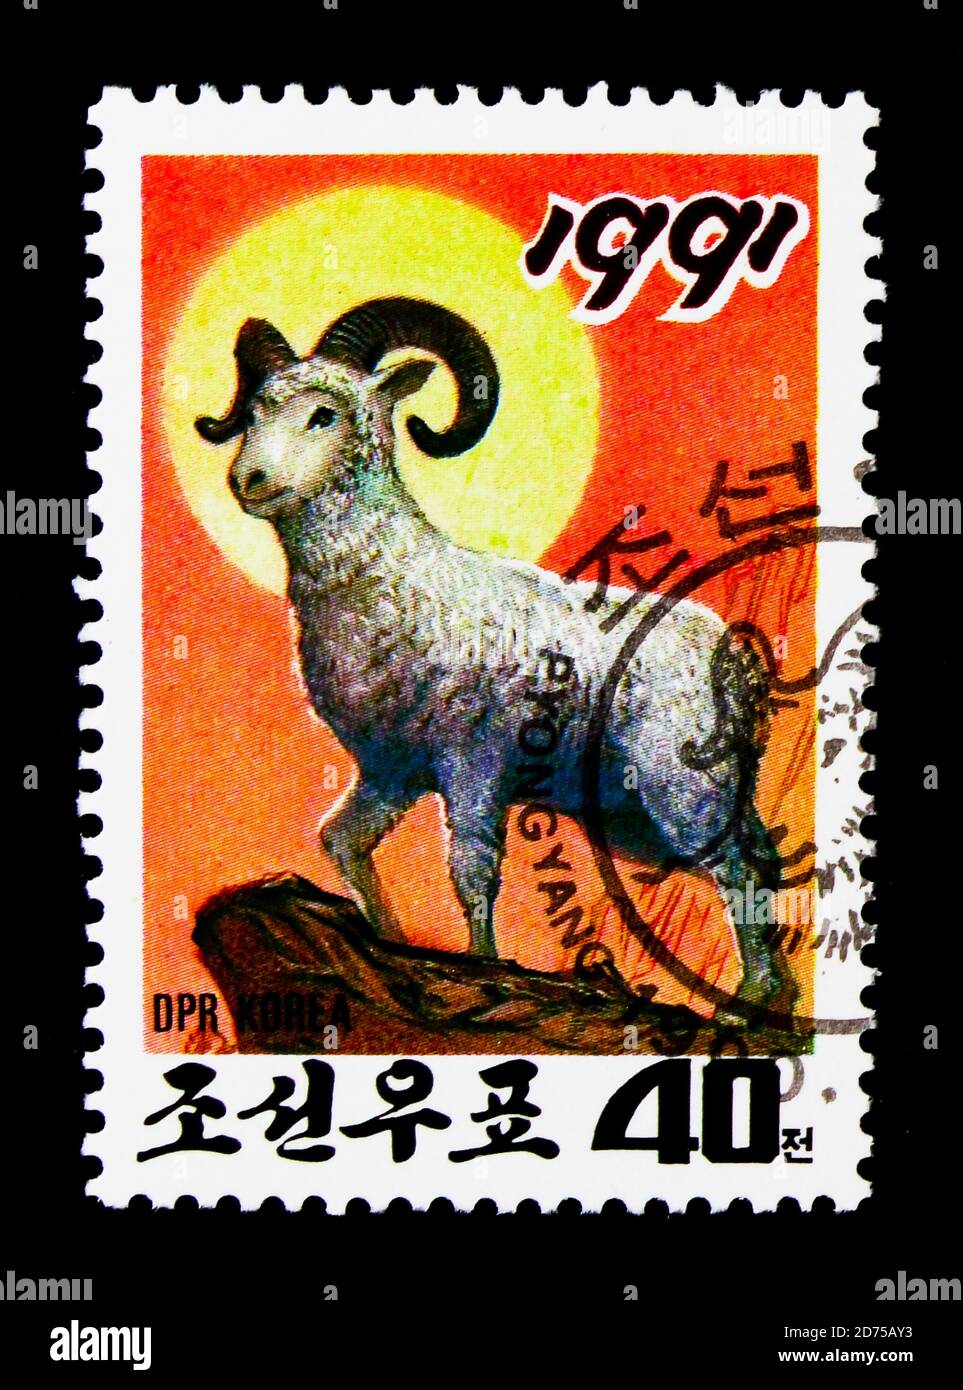 MOSCOU, RUSSIE - 25 NOVEMBRE 2017 : un timbre imprimé en république populaire démocratique de Corée montre RAM (Ovis ammon aries), série du nouvel an, vers 1990 Banque D'Images